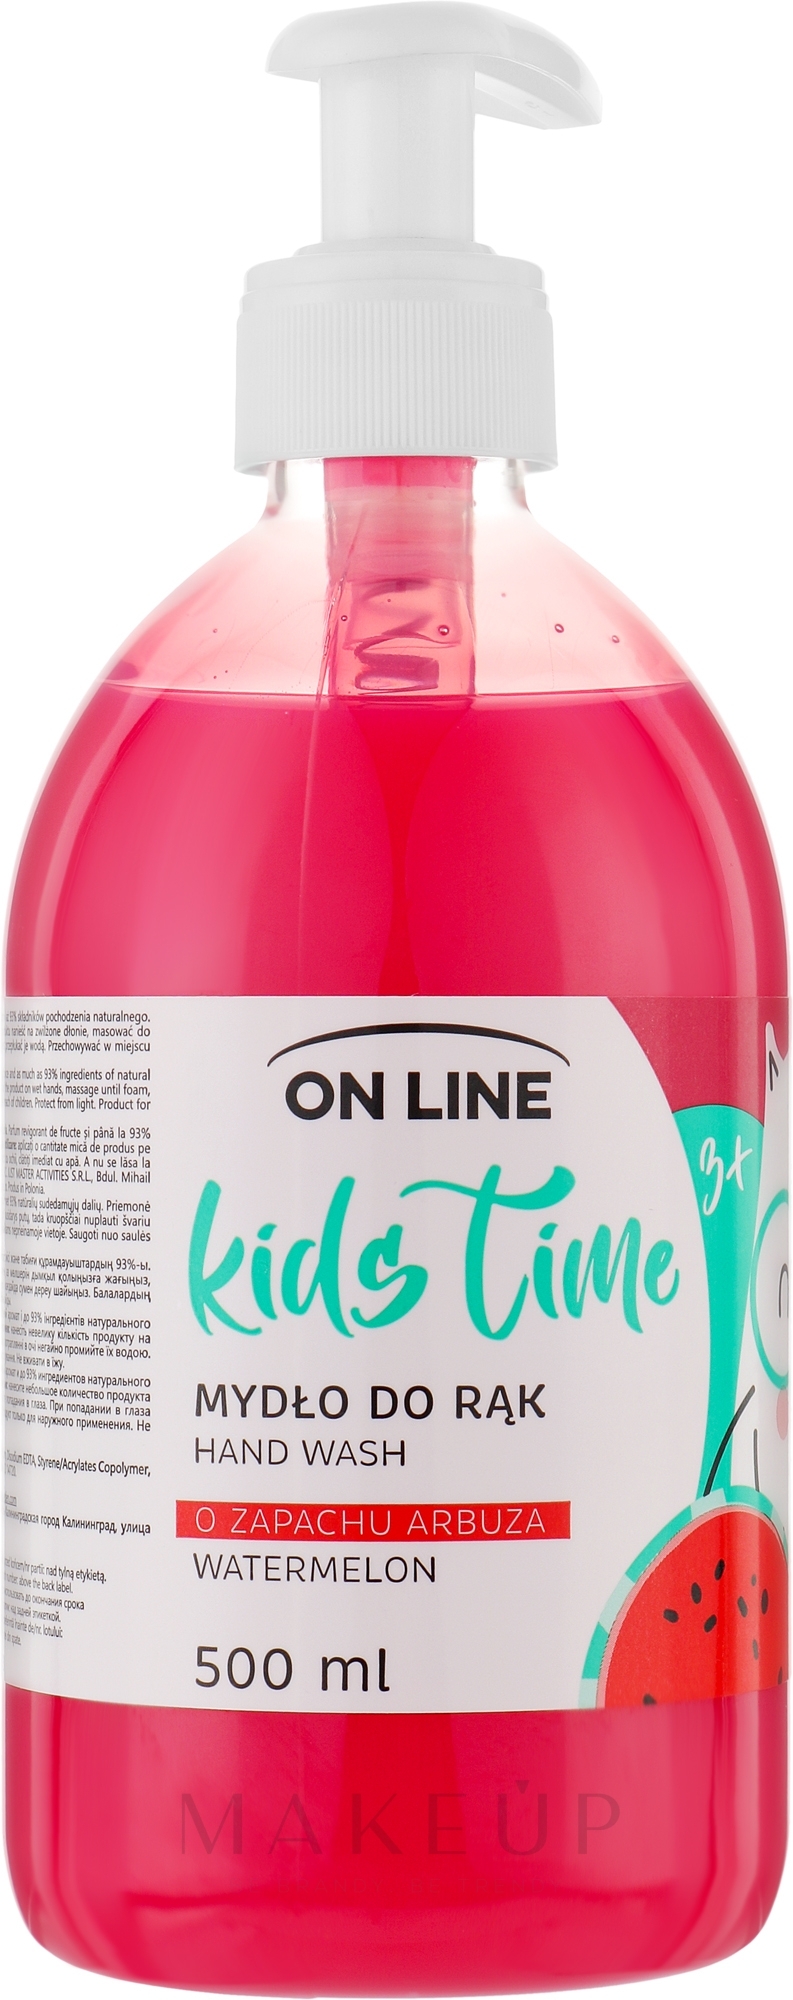 Flüssige Handseife für Kinder Wassermelone - On Line Kids Time Hand Wash — Bild 500 ml